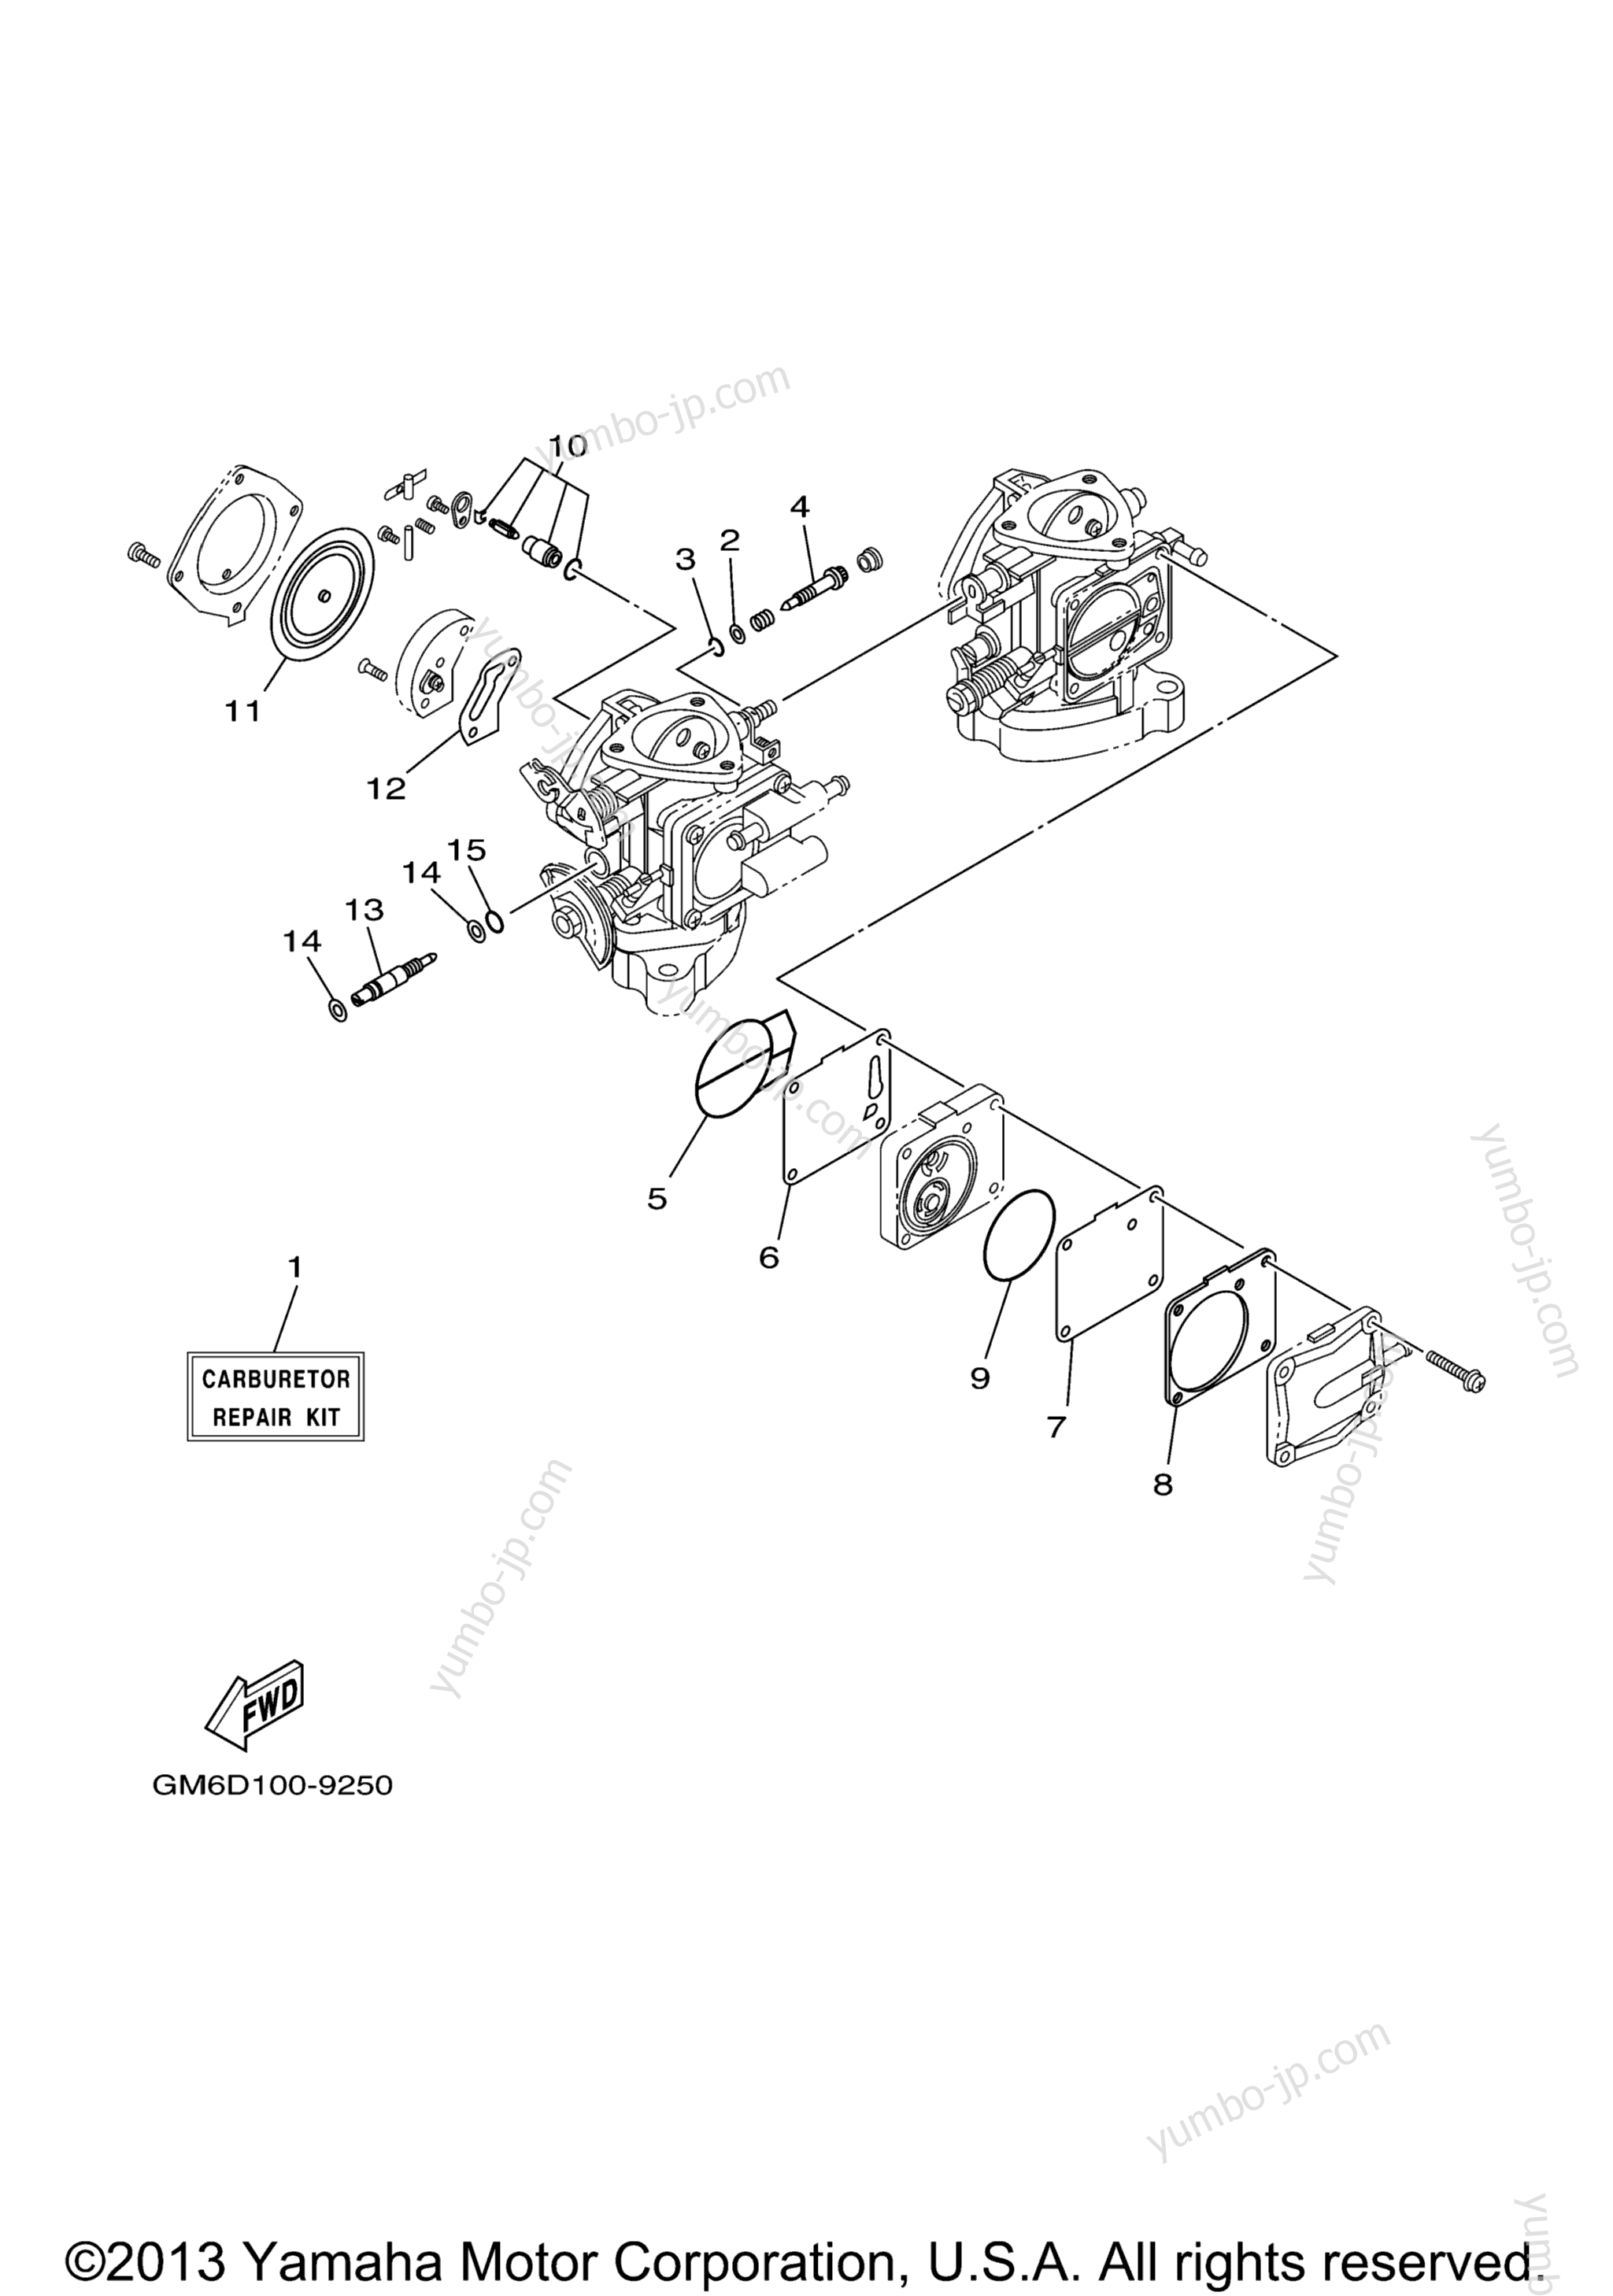 Repair Kit 2 для гидроциклов YAMAHA XL700 (XL700A) 2002 г.